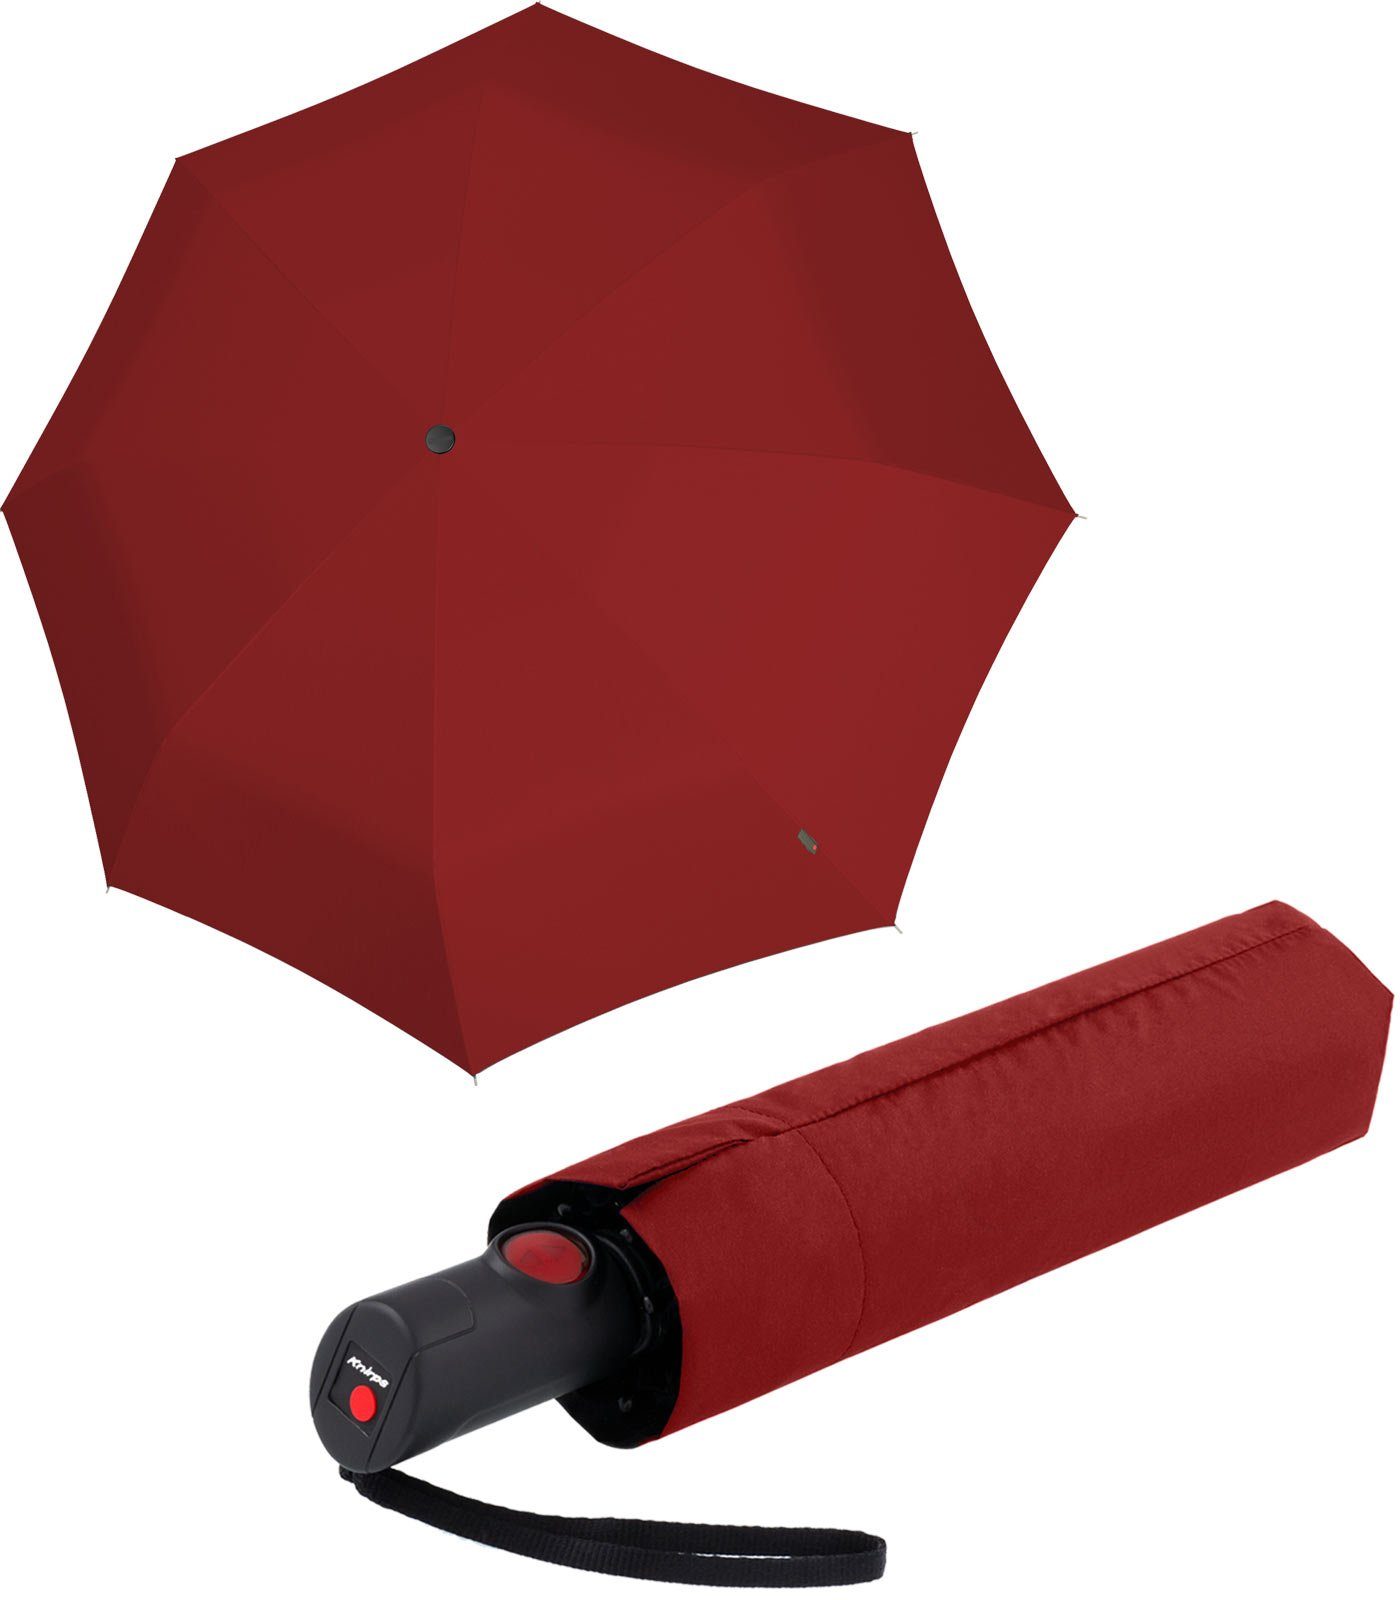 Knirps® Taschenregenschirm C.205 Red medium Duomatic leicht und Auf-Zu-Automatik, stabil